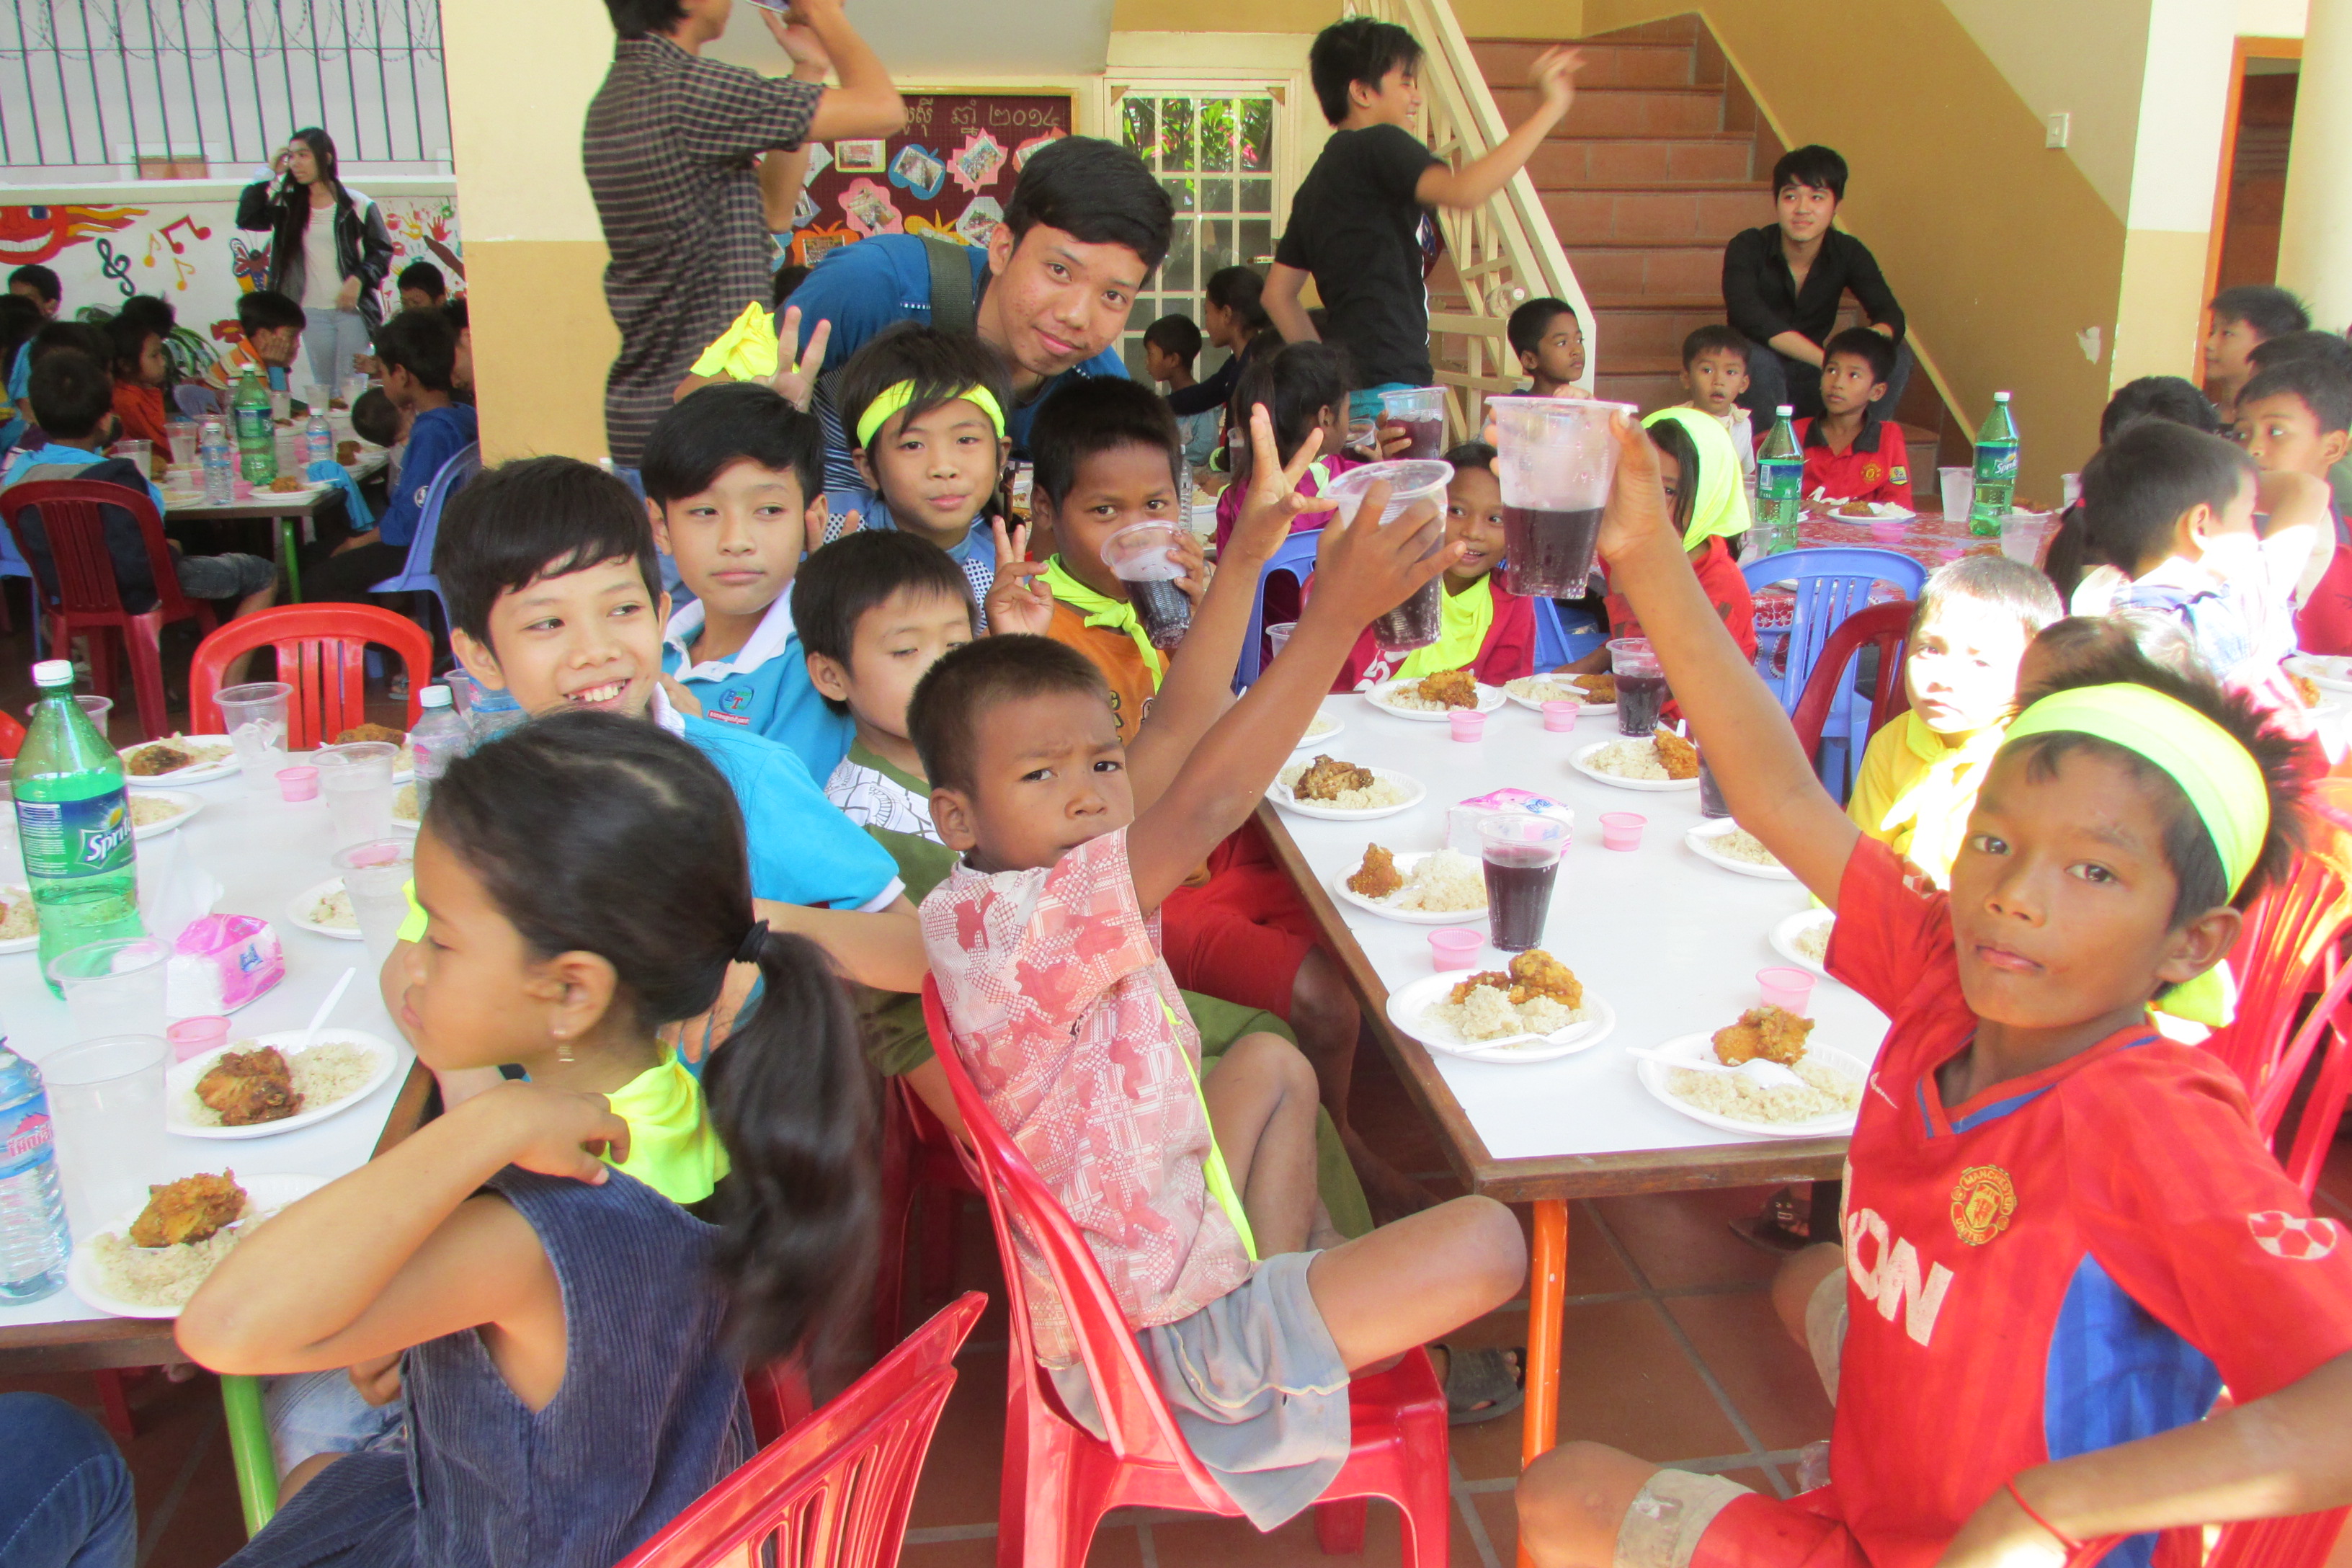 Il Pranzo di Natale a Phnom Penh, in Cambogia